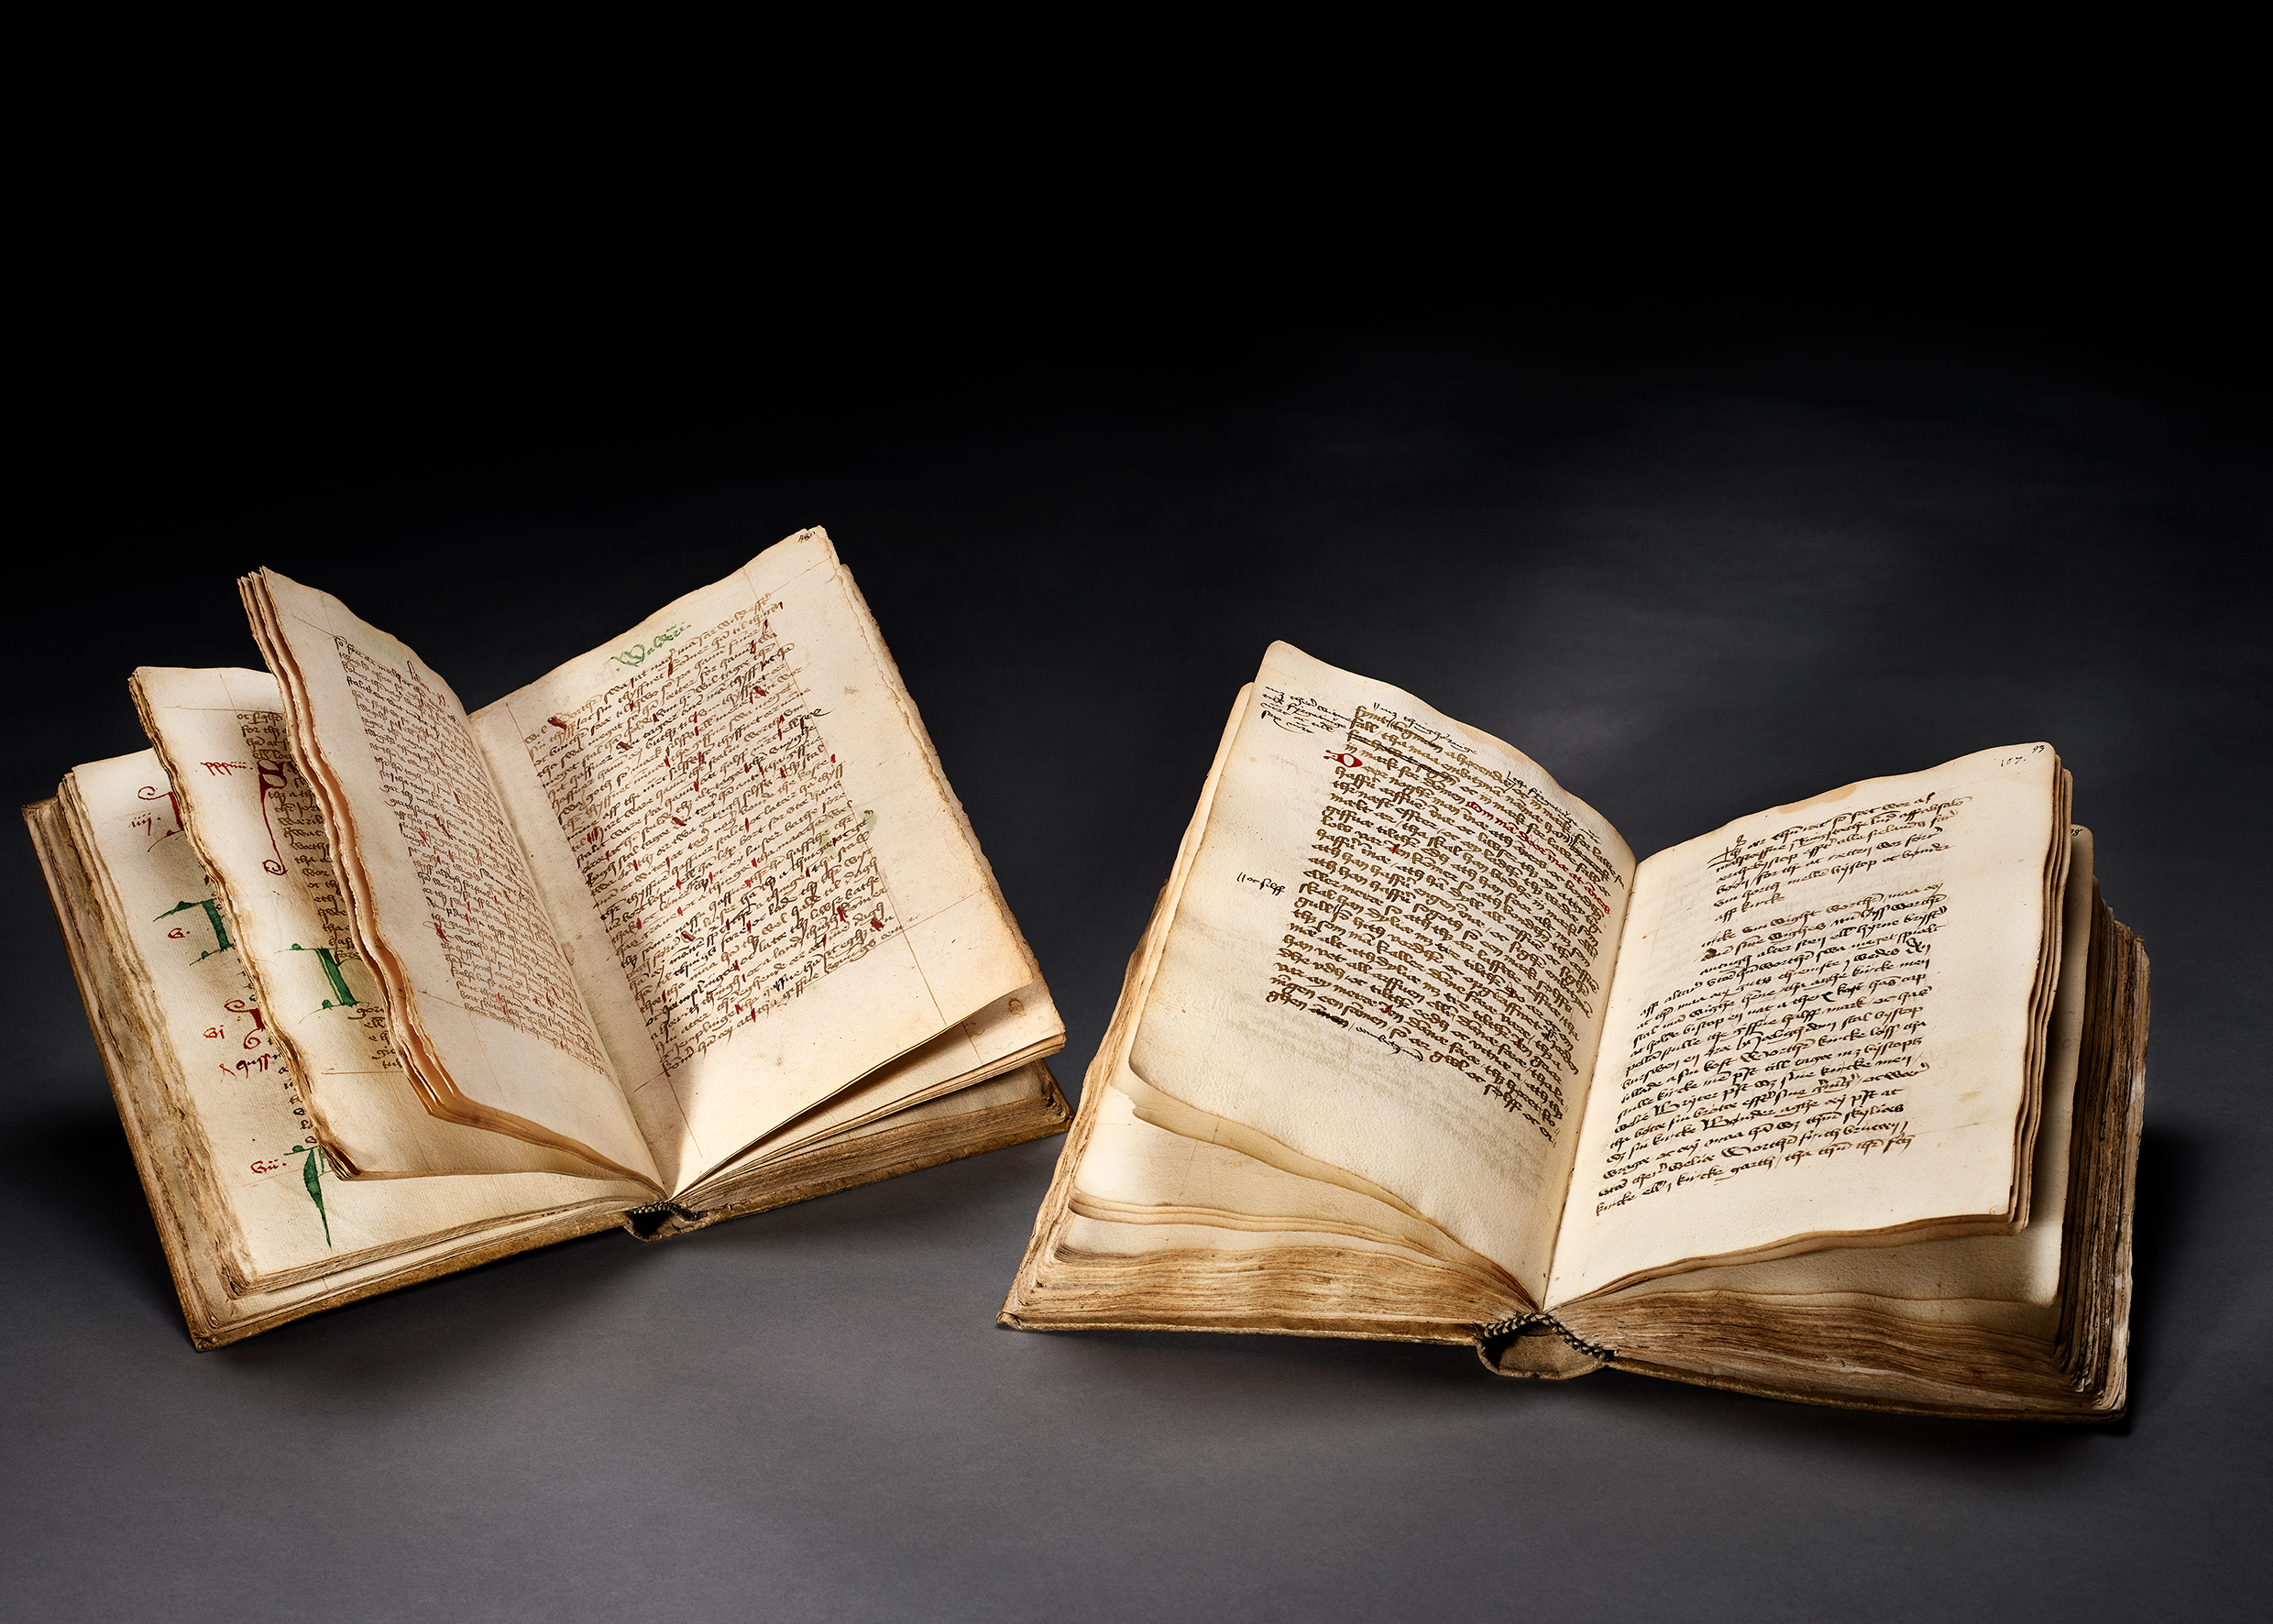 Både AM 23 4to (til venstre) og AM 28 4to (til højre) indeholder tekster skrevet af Jens Mikkelsen Jyde, som skrev i Kalundborg i 1490’erne